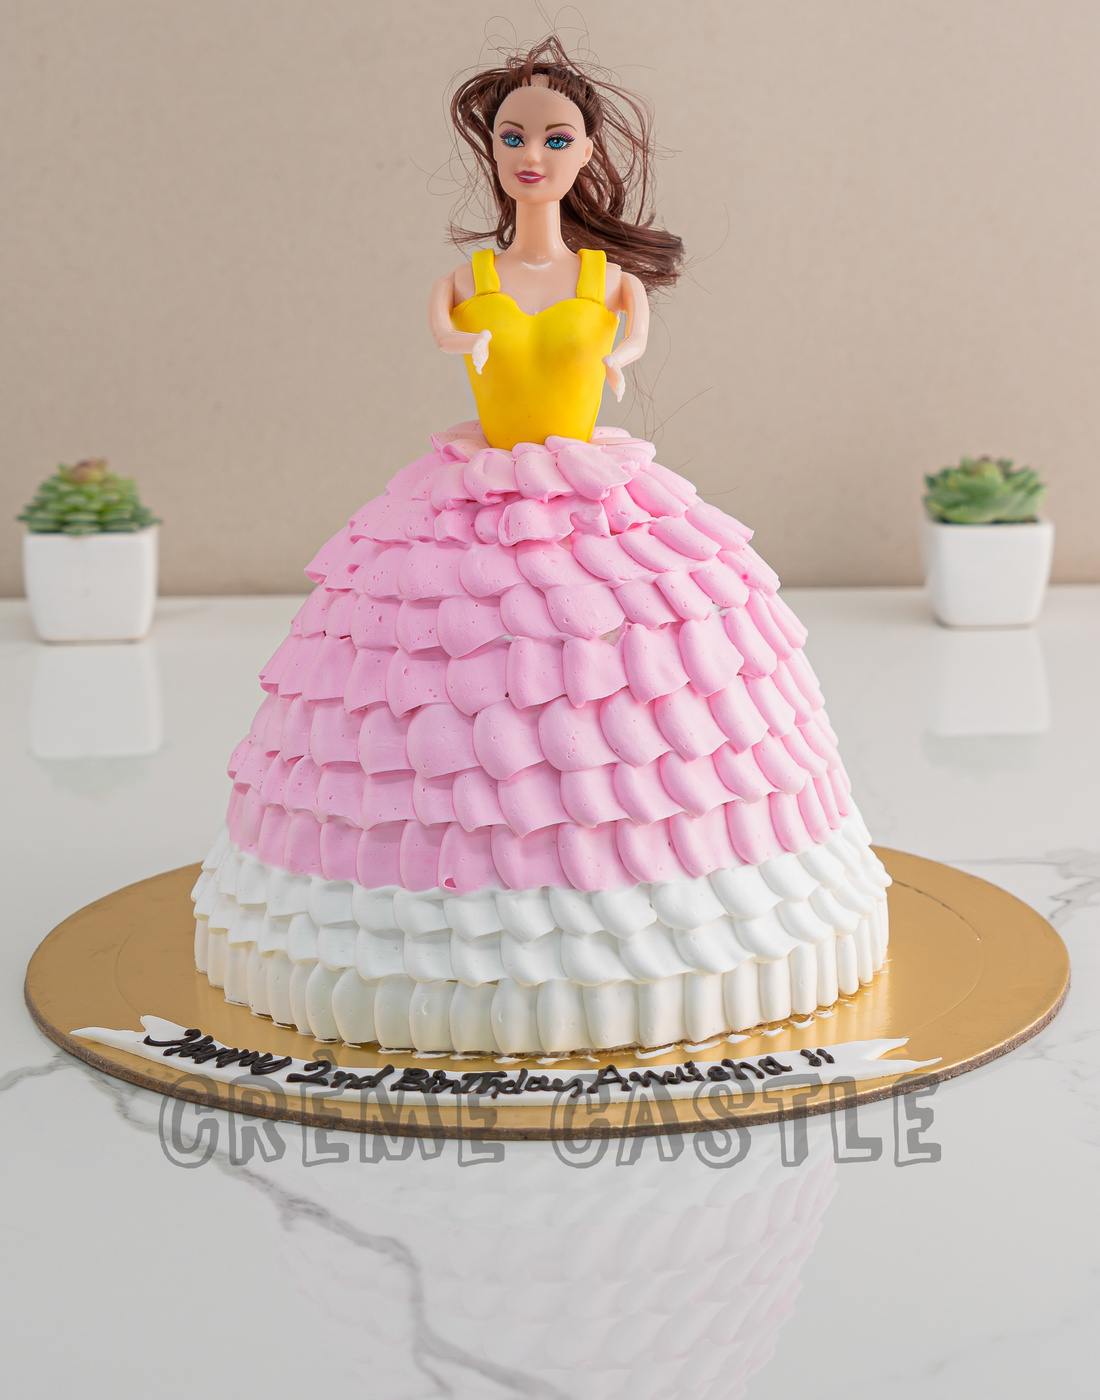 Cute Baby Doll Theme Cake | centenariocat.upeu.edu.pe